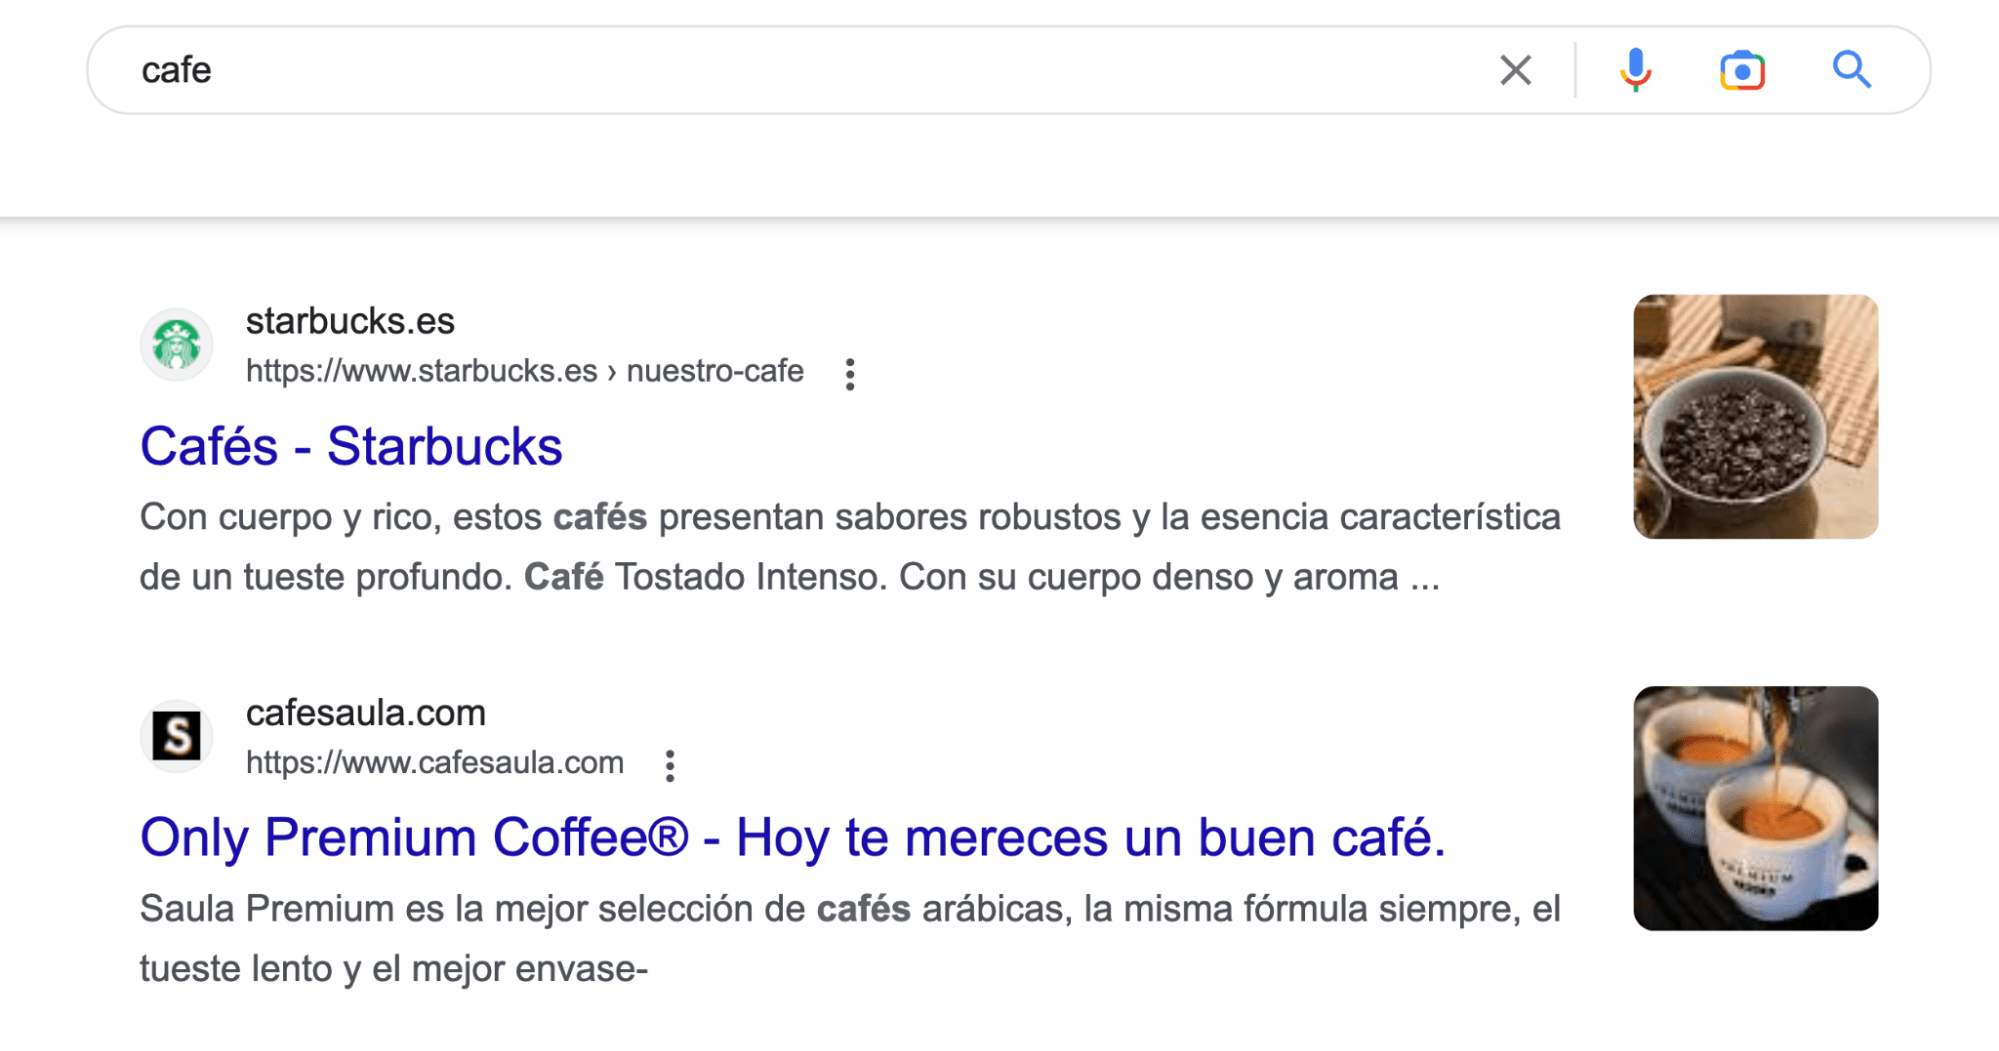 Resultado de la búsqueda "café" en Google